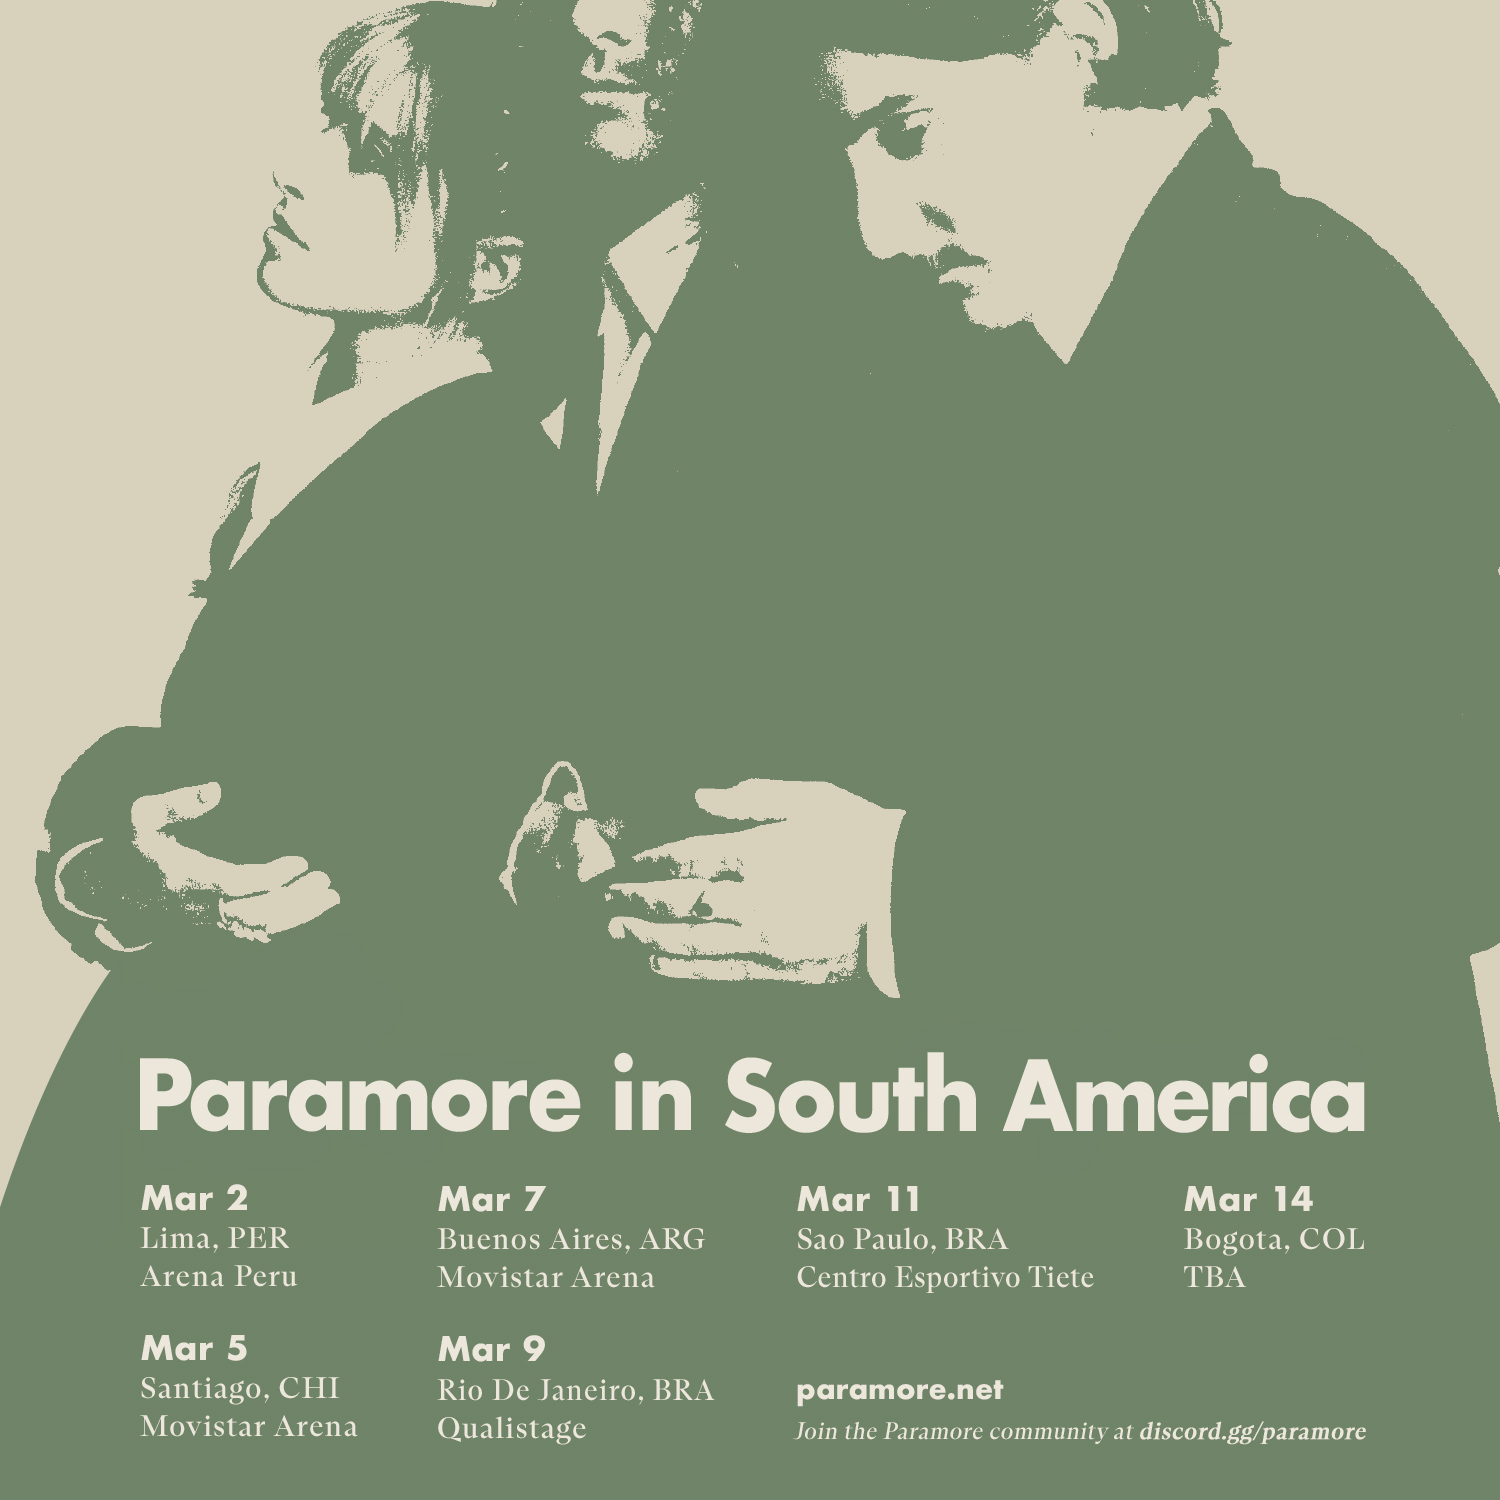 C_A87VTXsAQ1xTQ - Paramore Brasil - O maior portal sobre Paramore no país